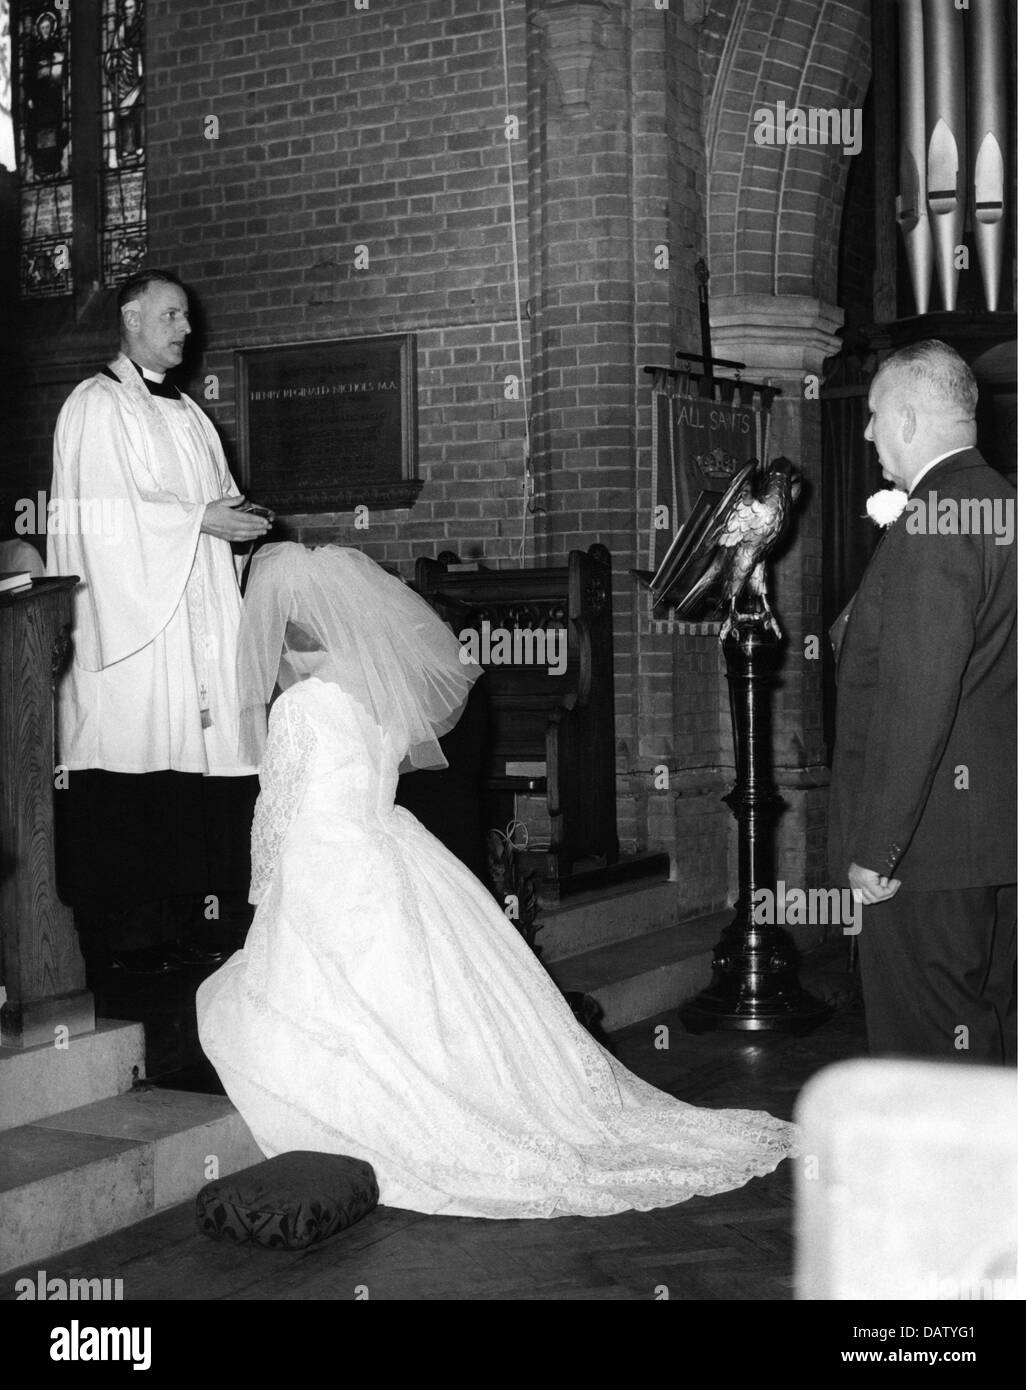 Persone, matrimoni, cerimonie, sposa durante la cerimonia nuziale nella chiesa, anni 50, diritti aggiuntivi-clearences-non disponibile Foto Stock